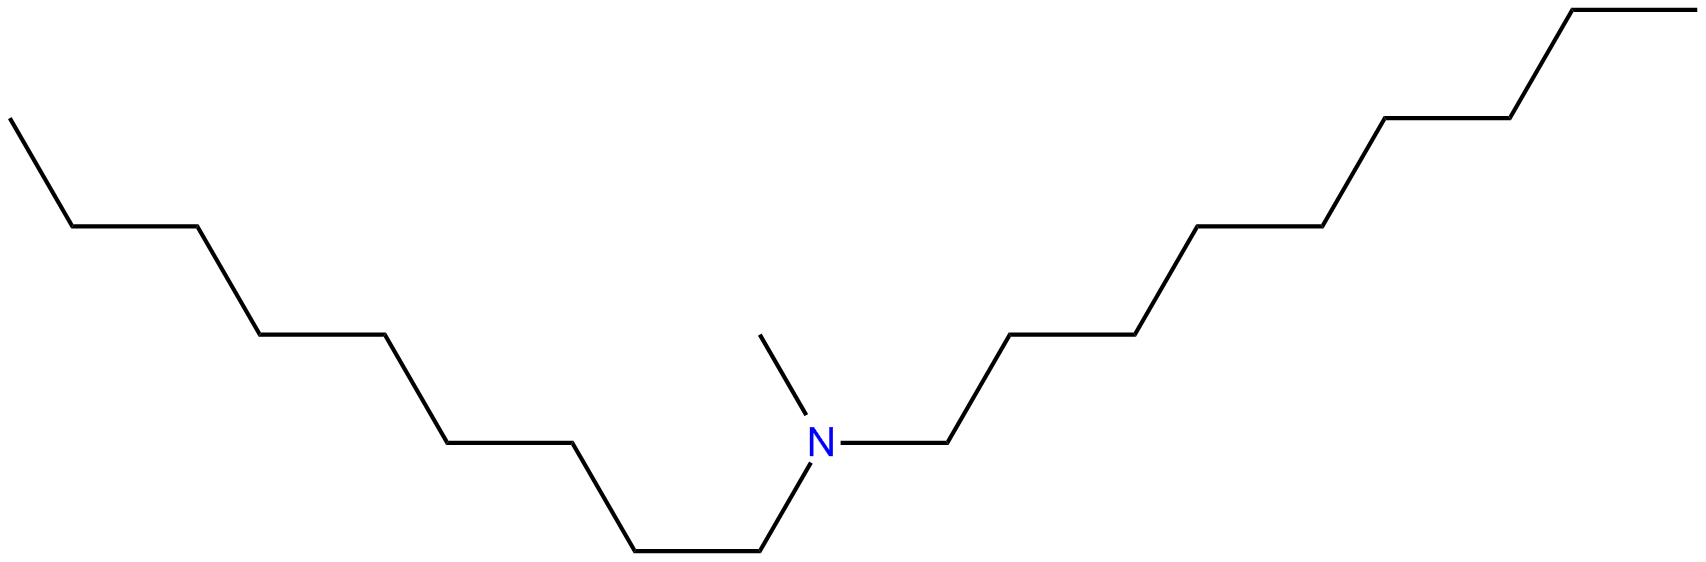 Image of nonanamine, N-methyl-N-nonyl-